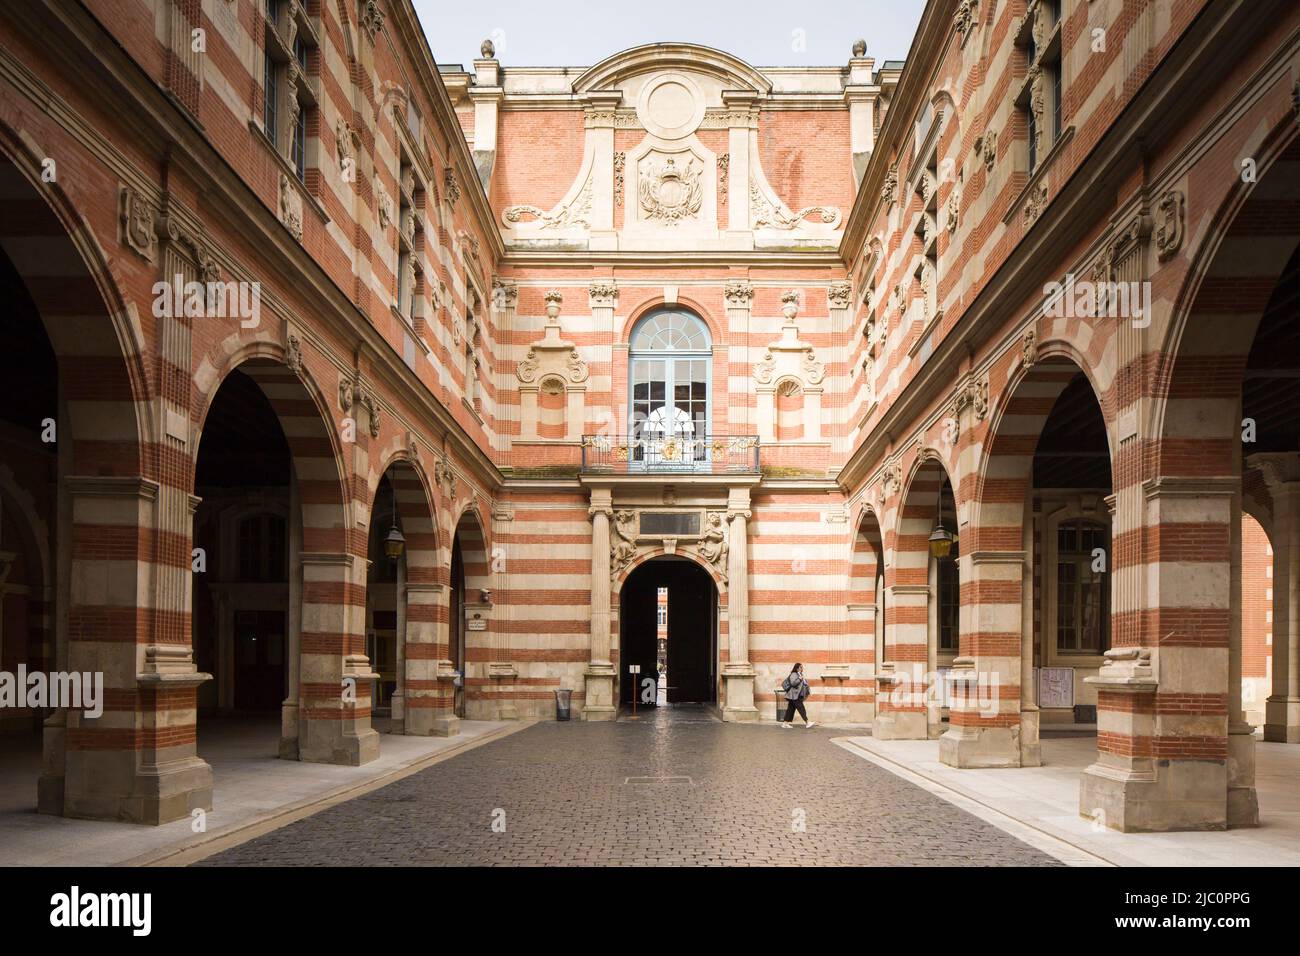 Das Capitole de Toulouse (Hotel de Ville oder Rathaus), Frankreich. Innenhof mit Renaissance-Motiven. Stockfoto